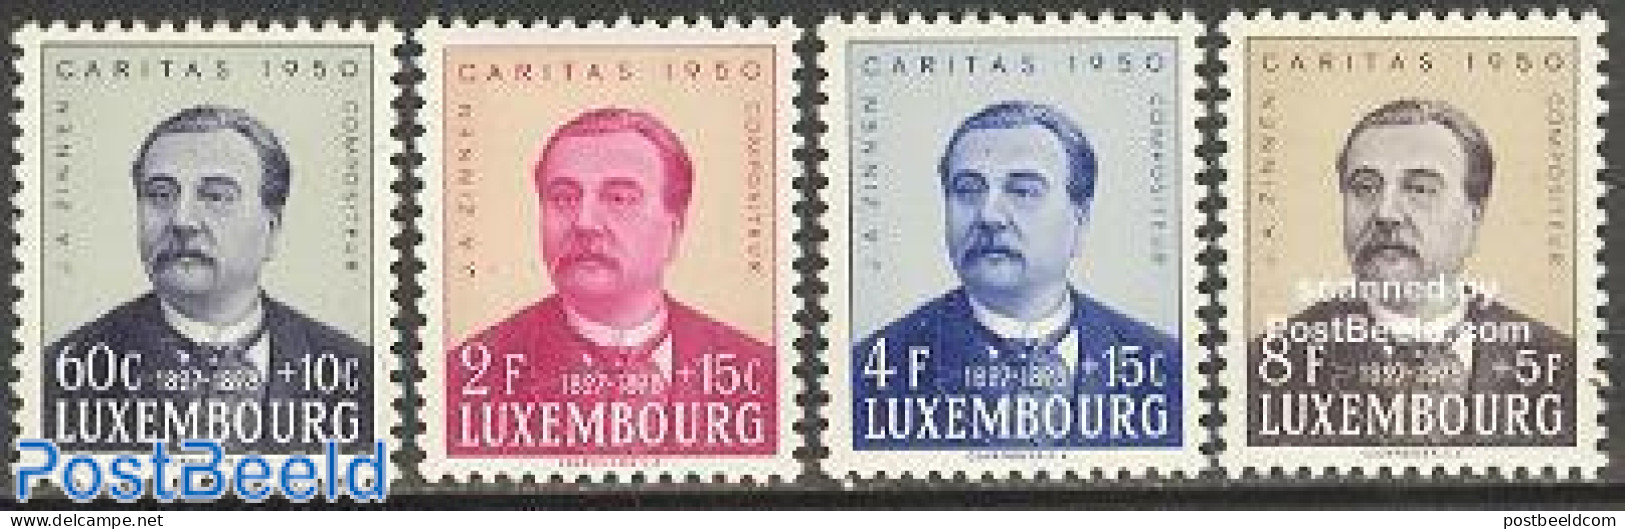 Luxemburg 1950 Caritas, J.A. Zinnen 4v, Unused (hinged), Performance Art - Music - Unused Stamps